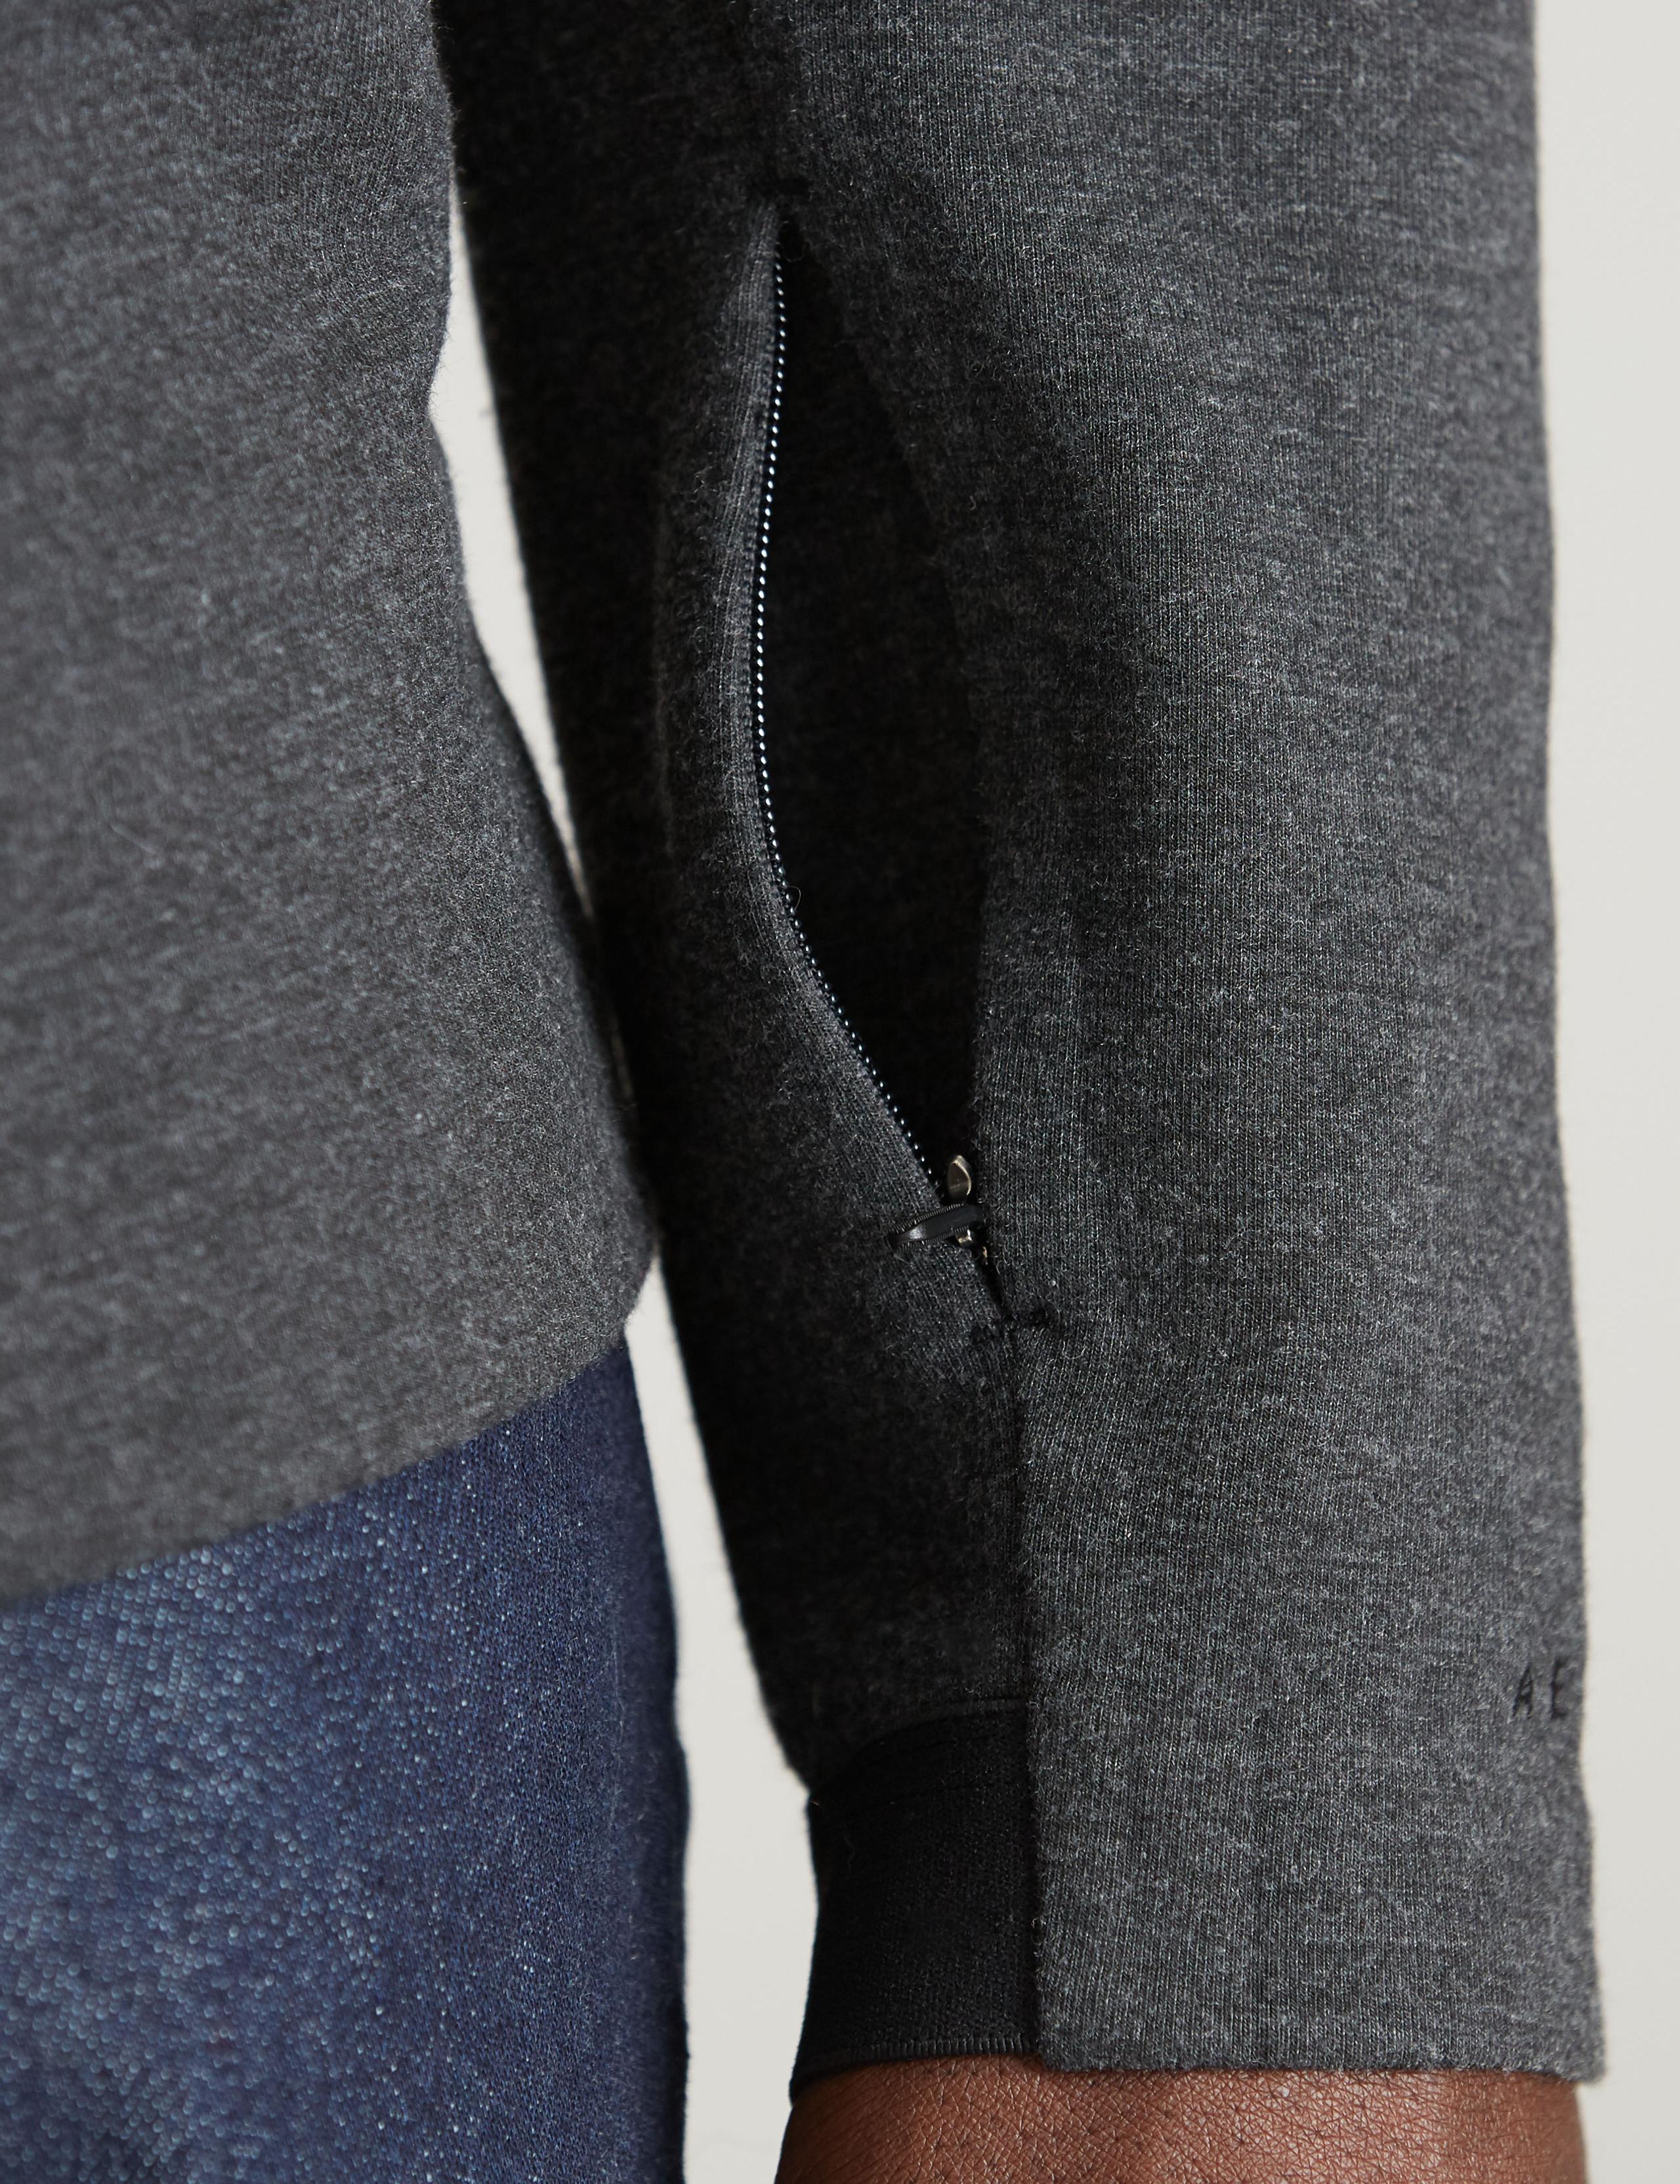 Detail of hidden pocket on sleeve of man wearing Forge Hoodie